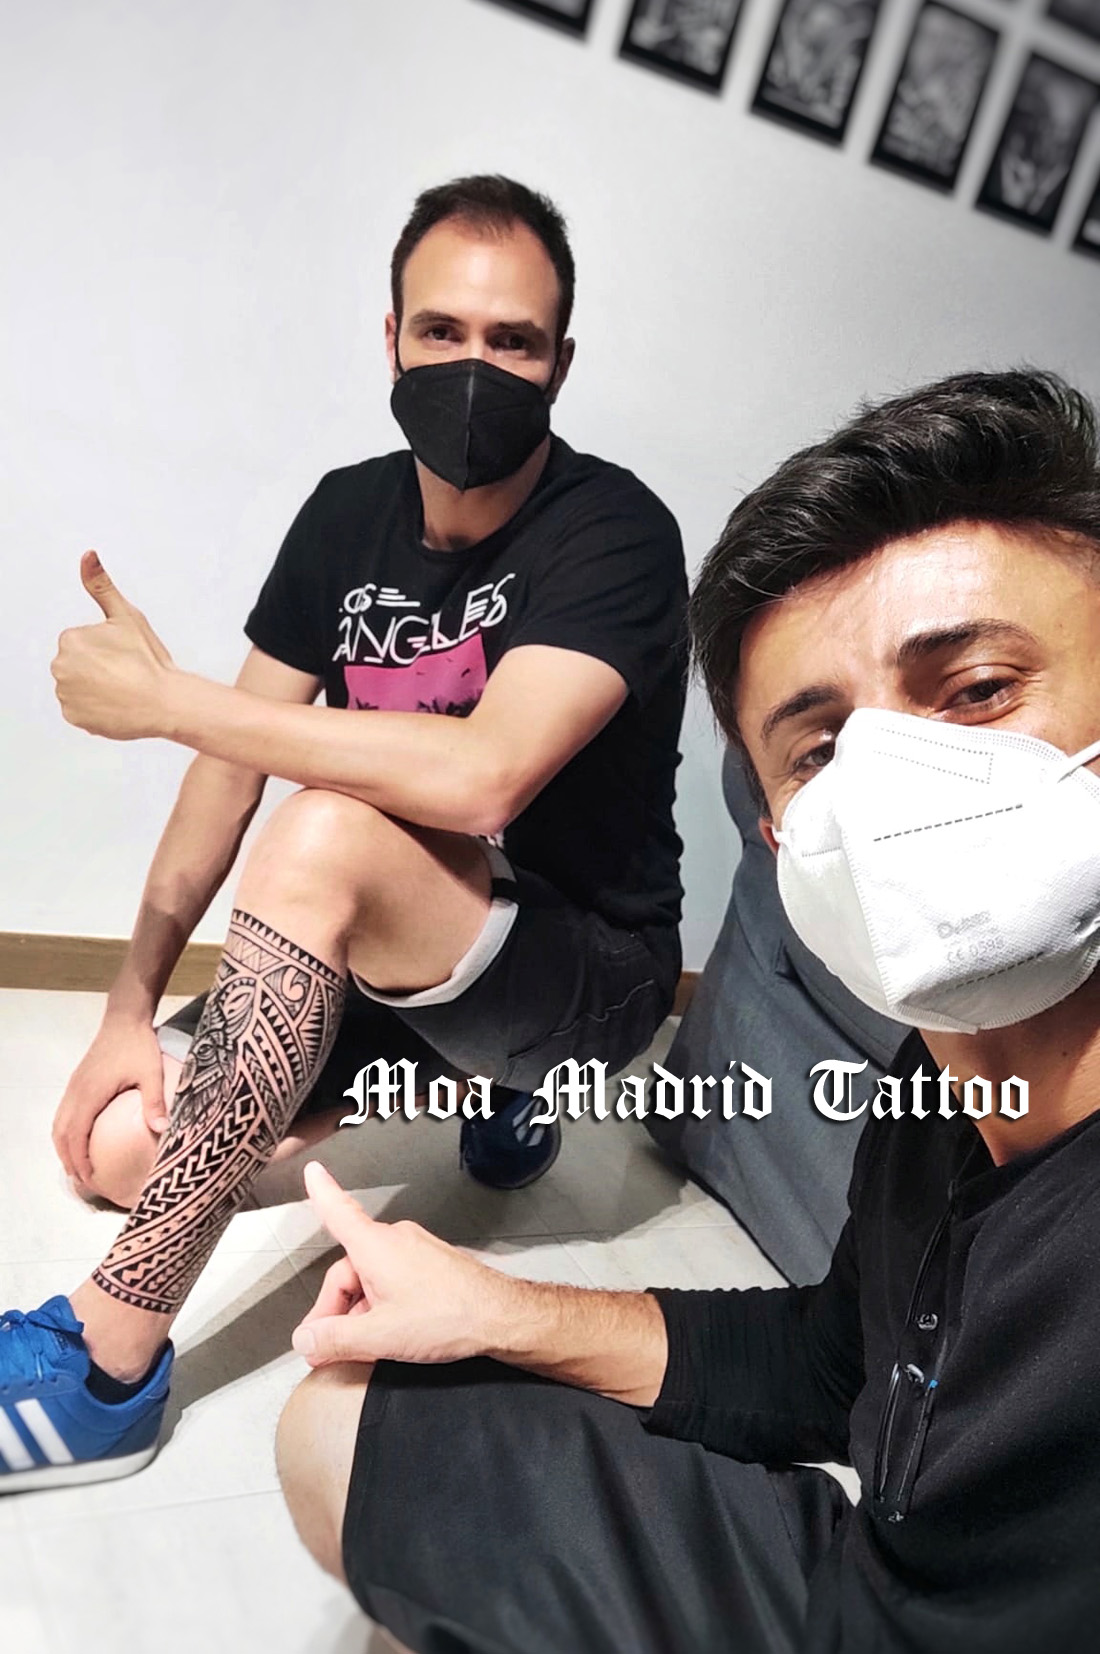 Diseñador de tatuajes y tatuador con estudio propio en Madrid capital. <br>
		WhatsApp 650 018 319